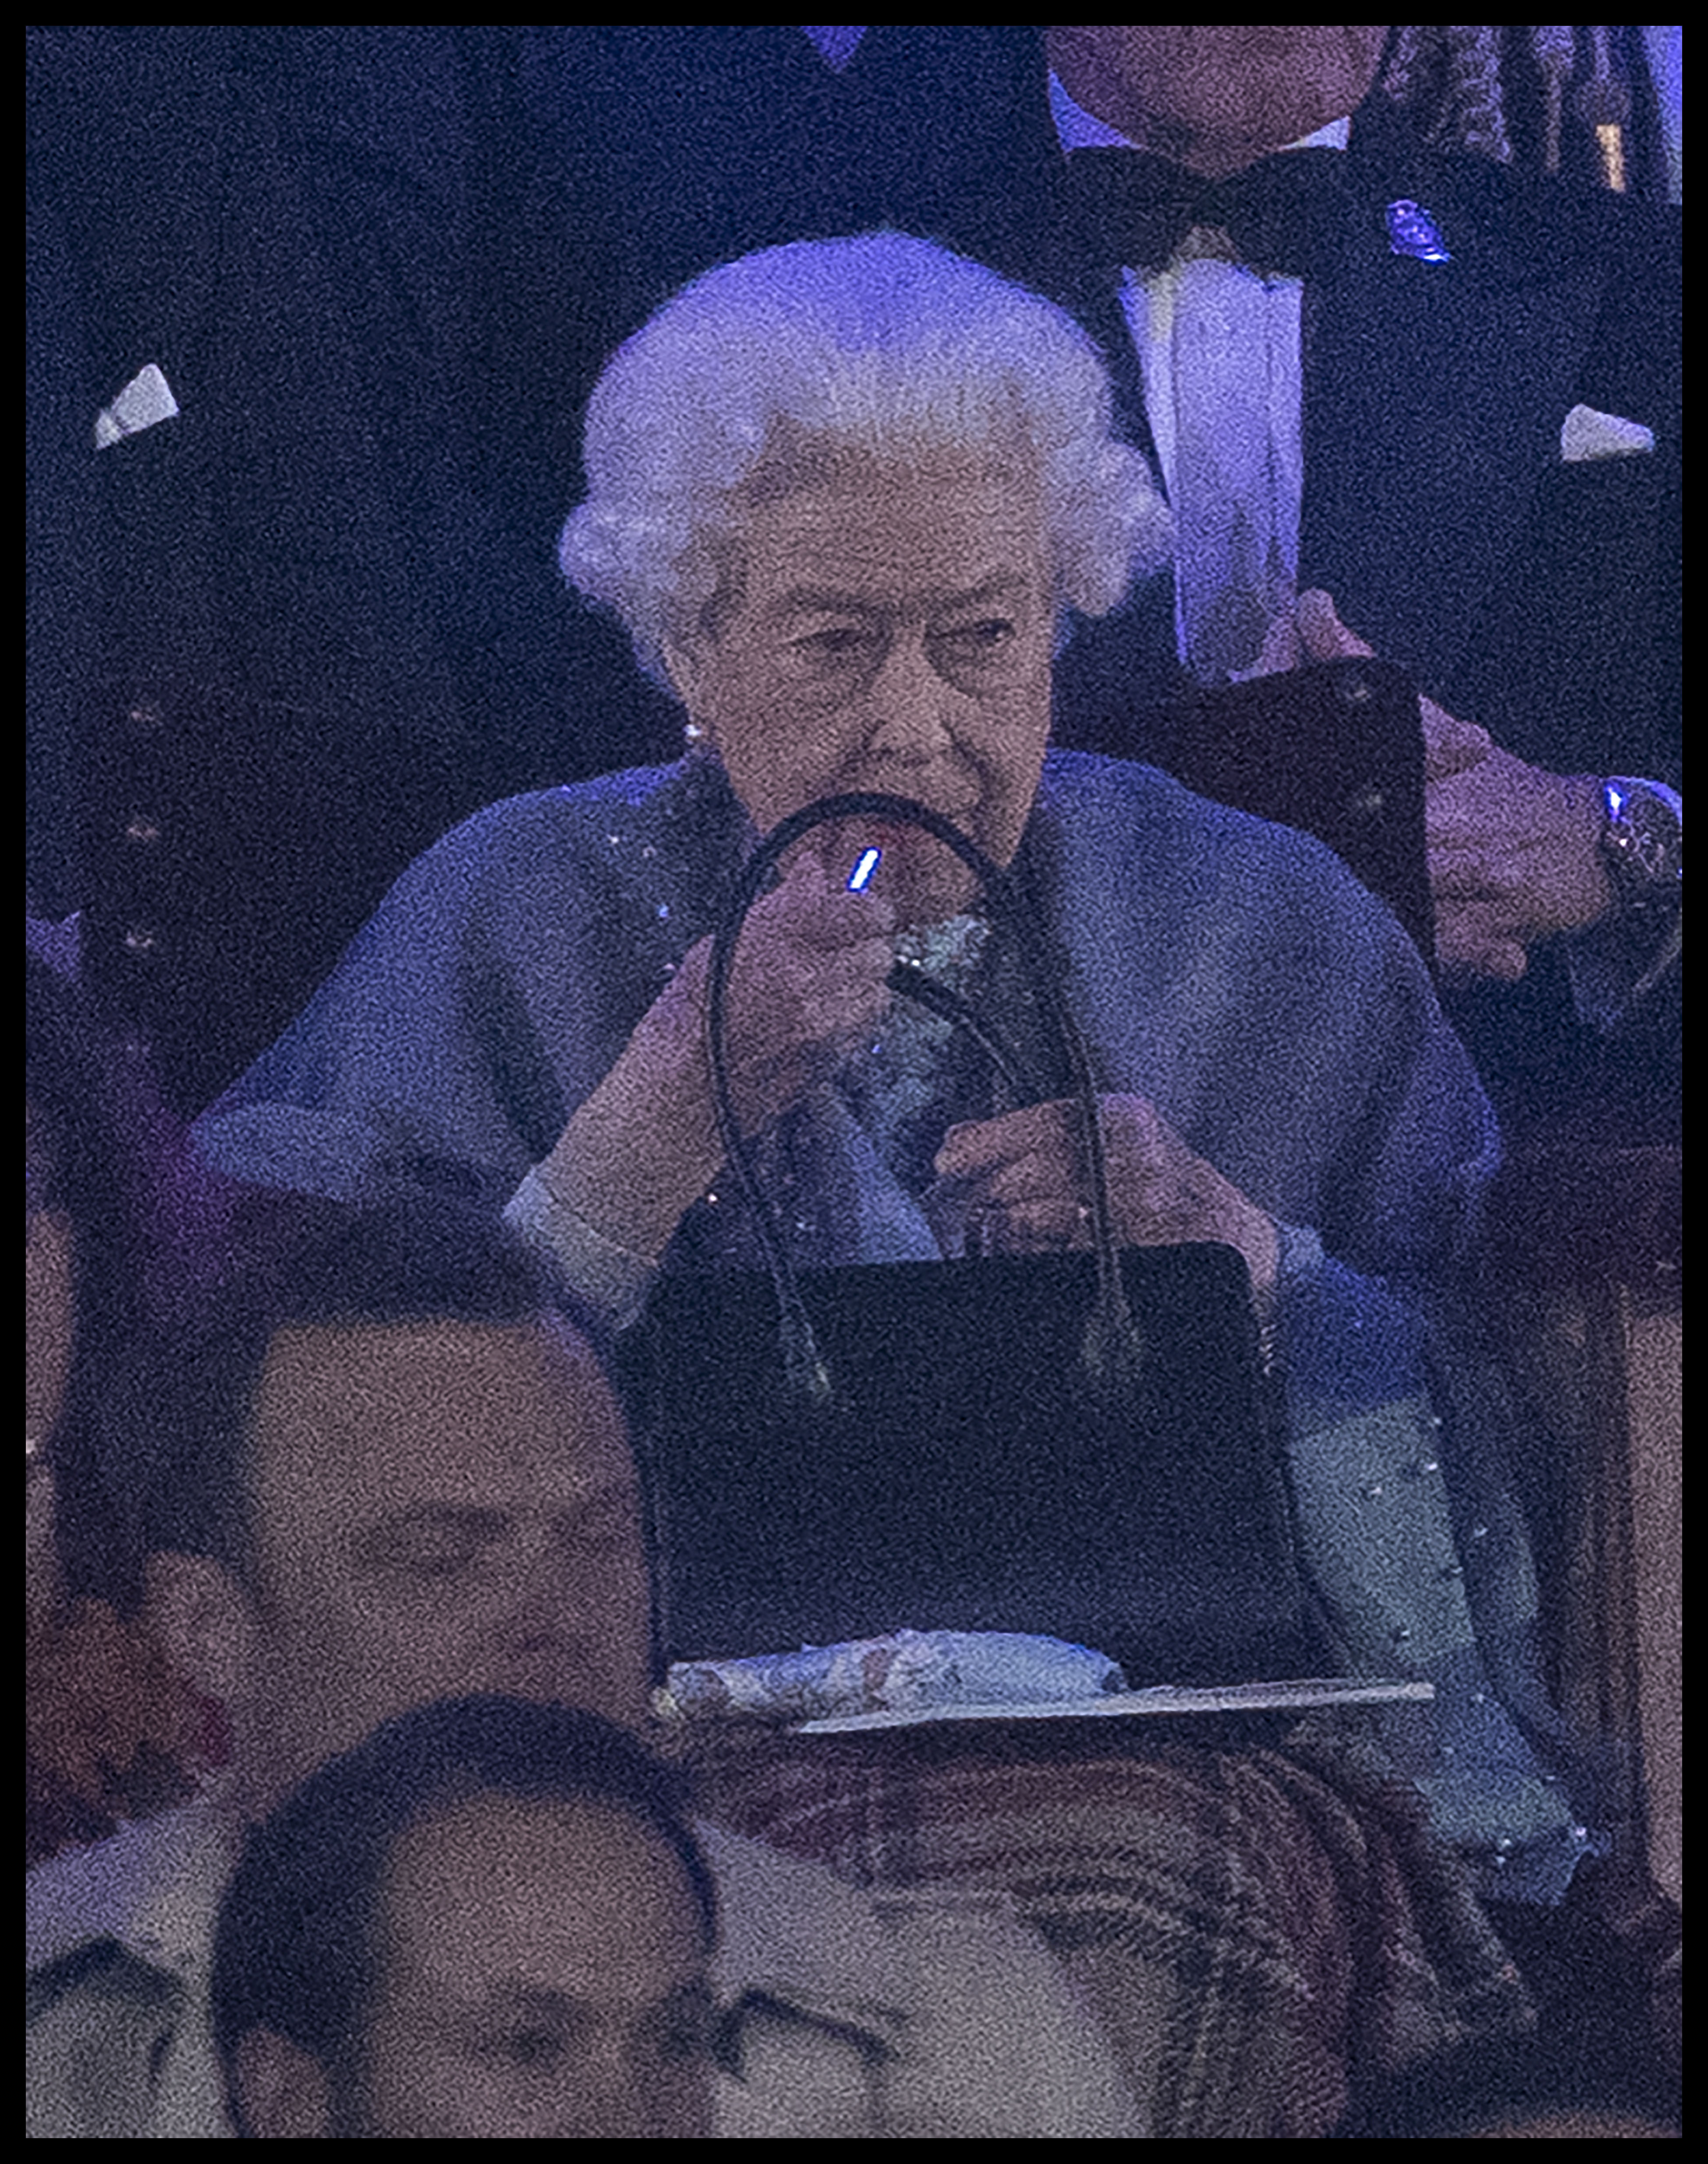 Елизавета II, приехав на Royal Windsor Horse Show, доказала, что даже в 96 лет, она - в первую очередь женщина